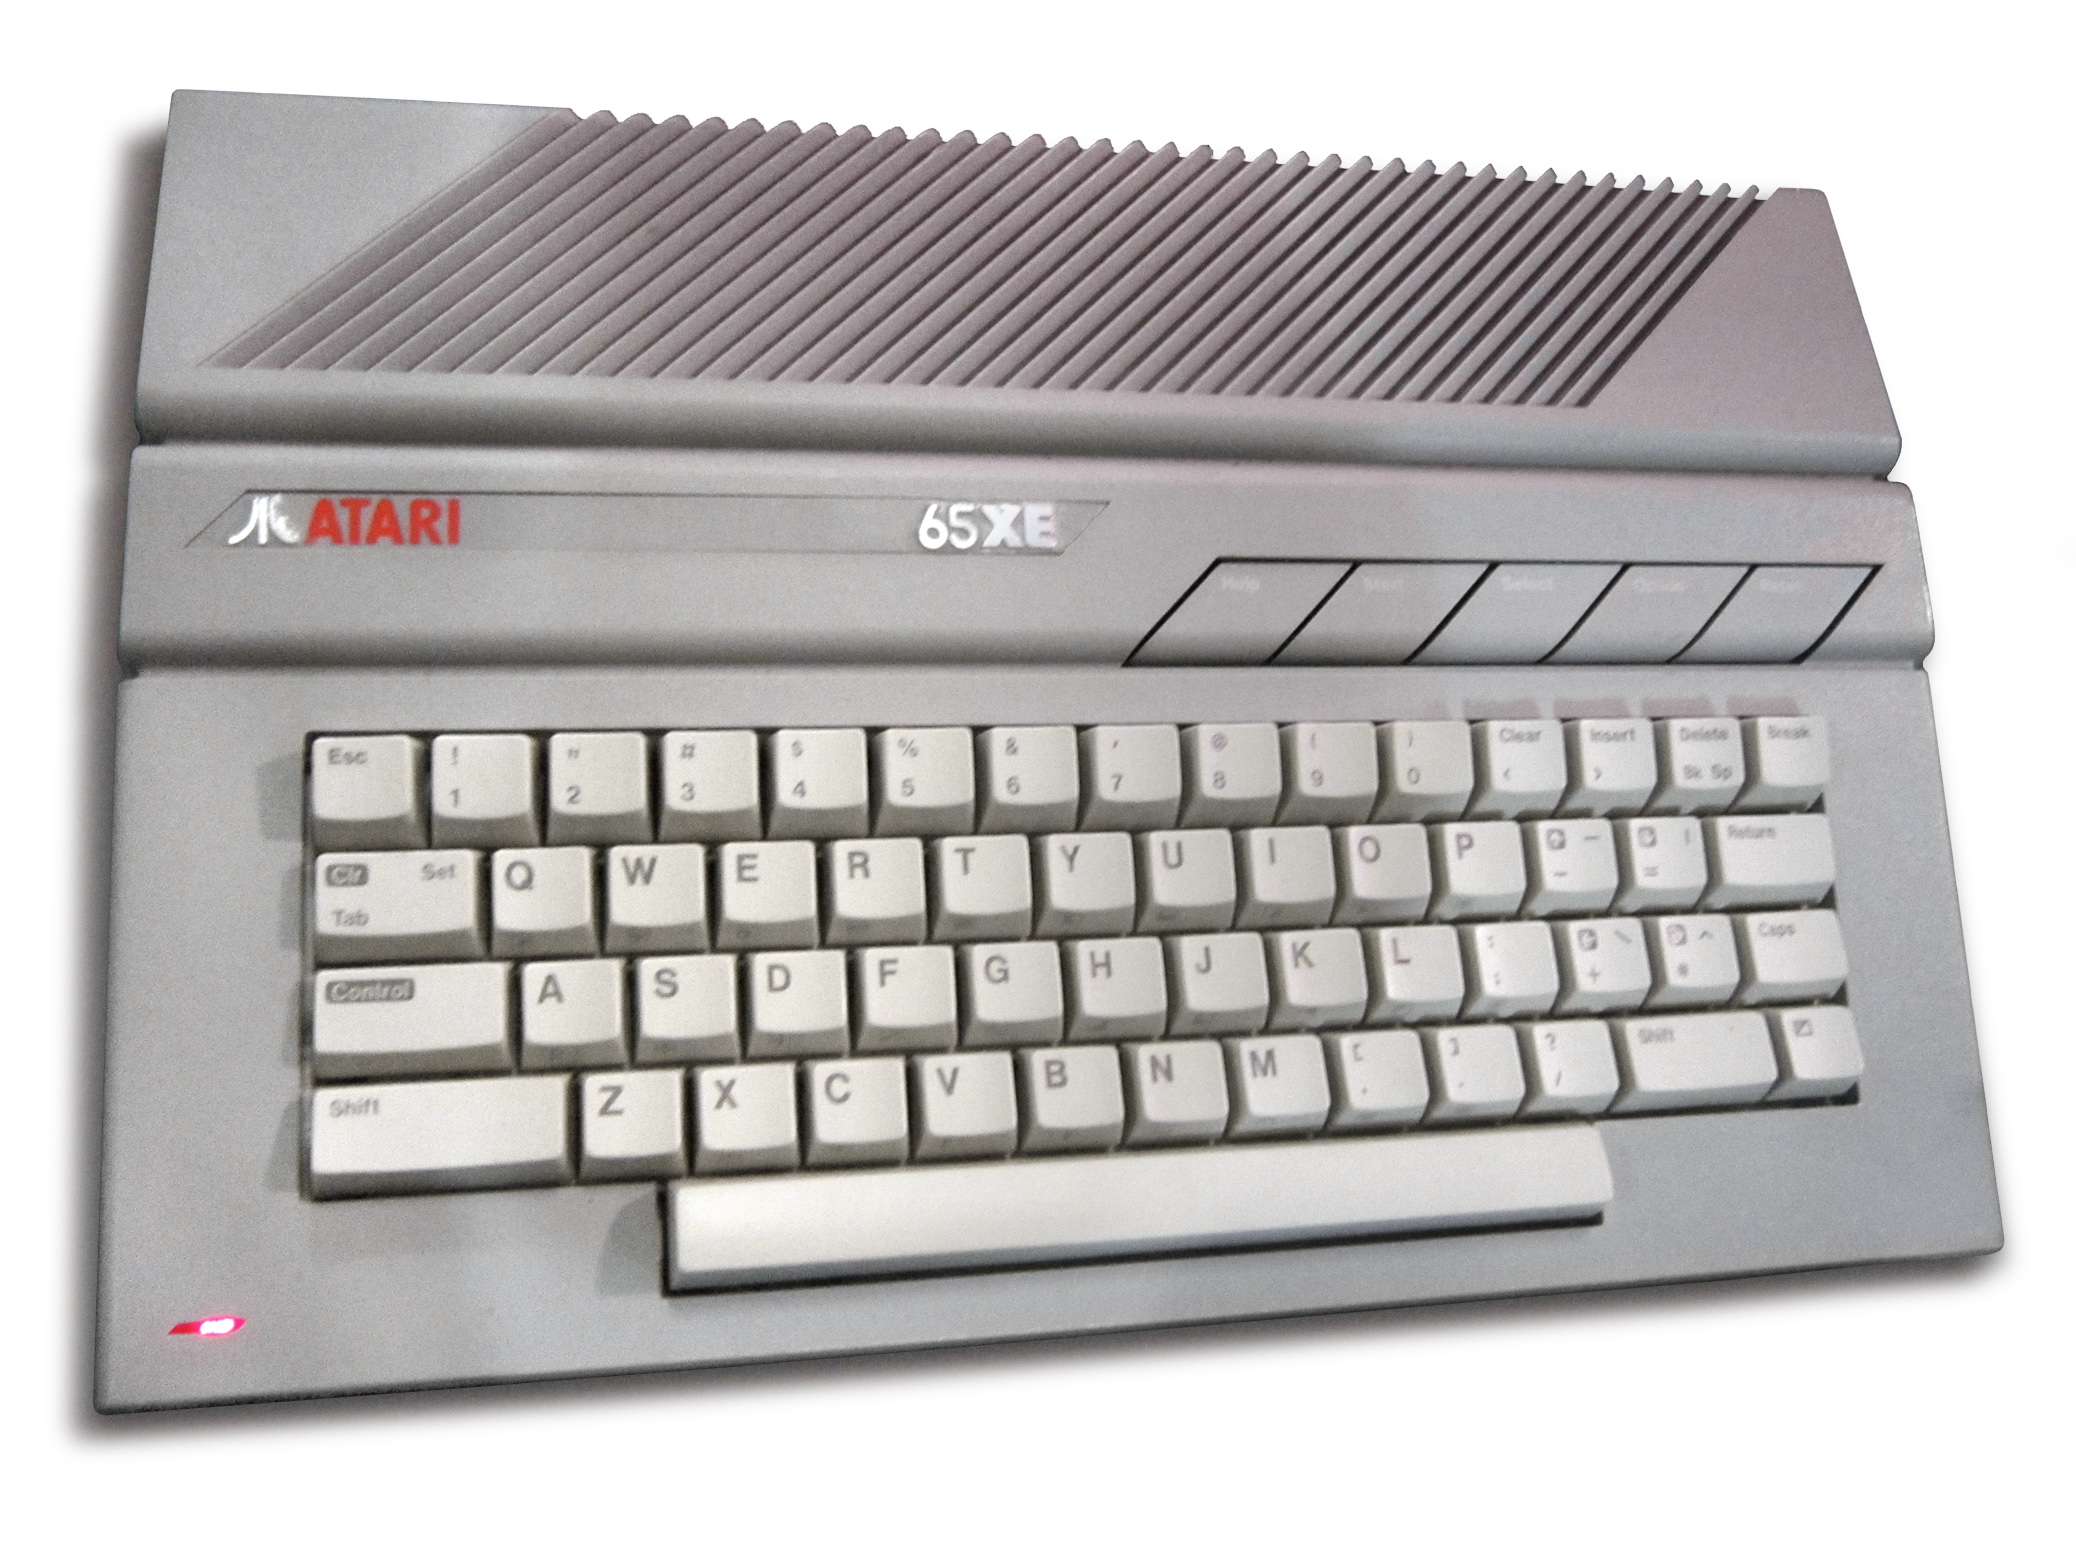 Atari 65XE computer at Play Expo 2013 (retouched cutout) (white bg).jpg